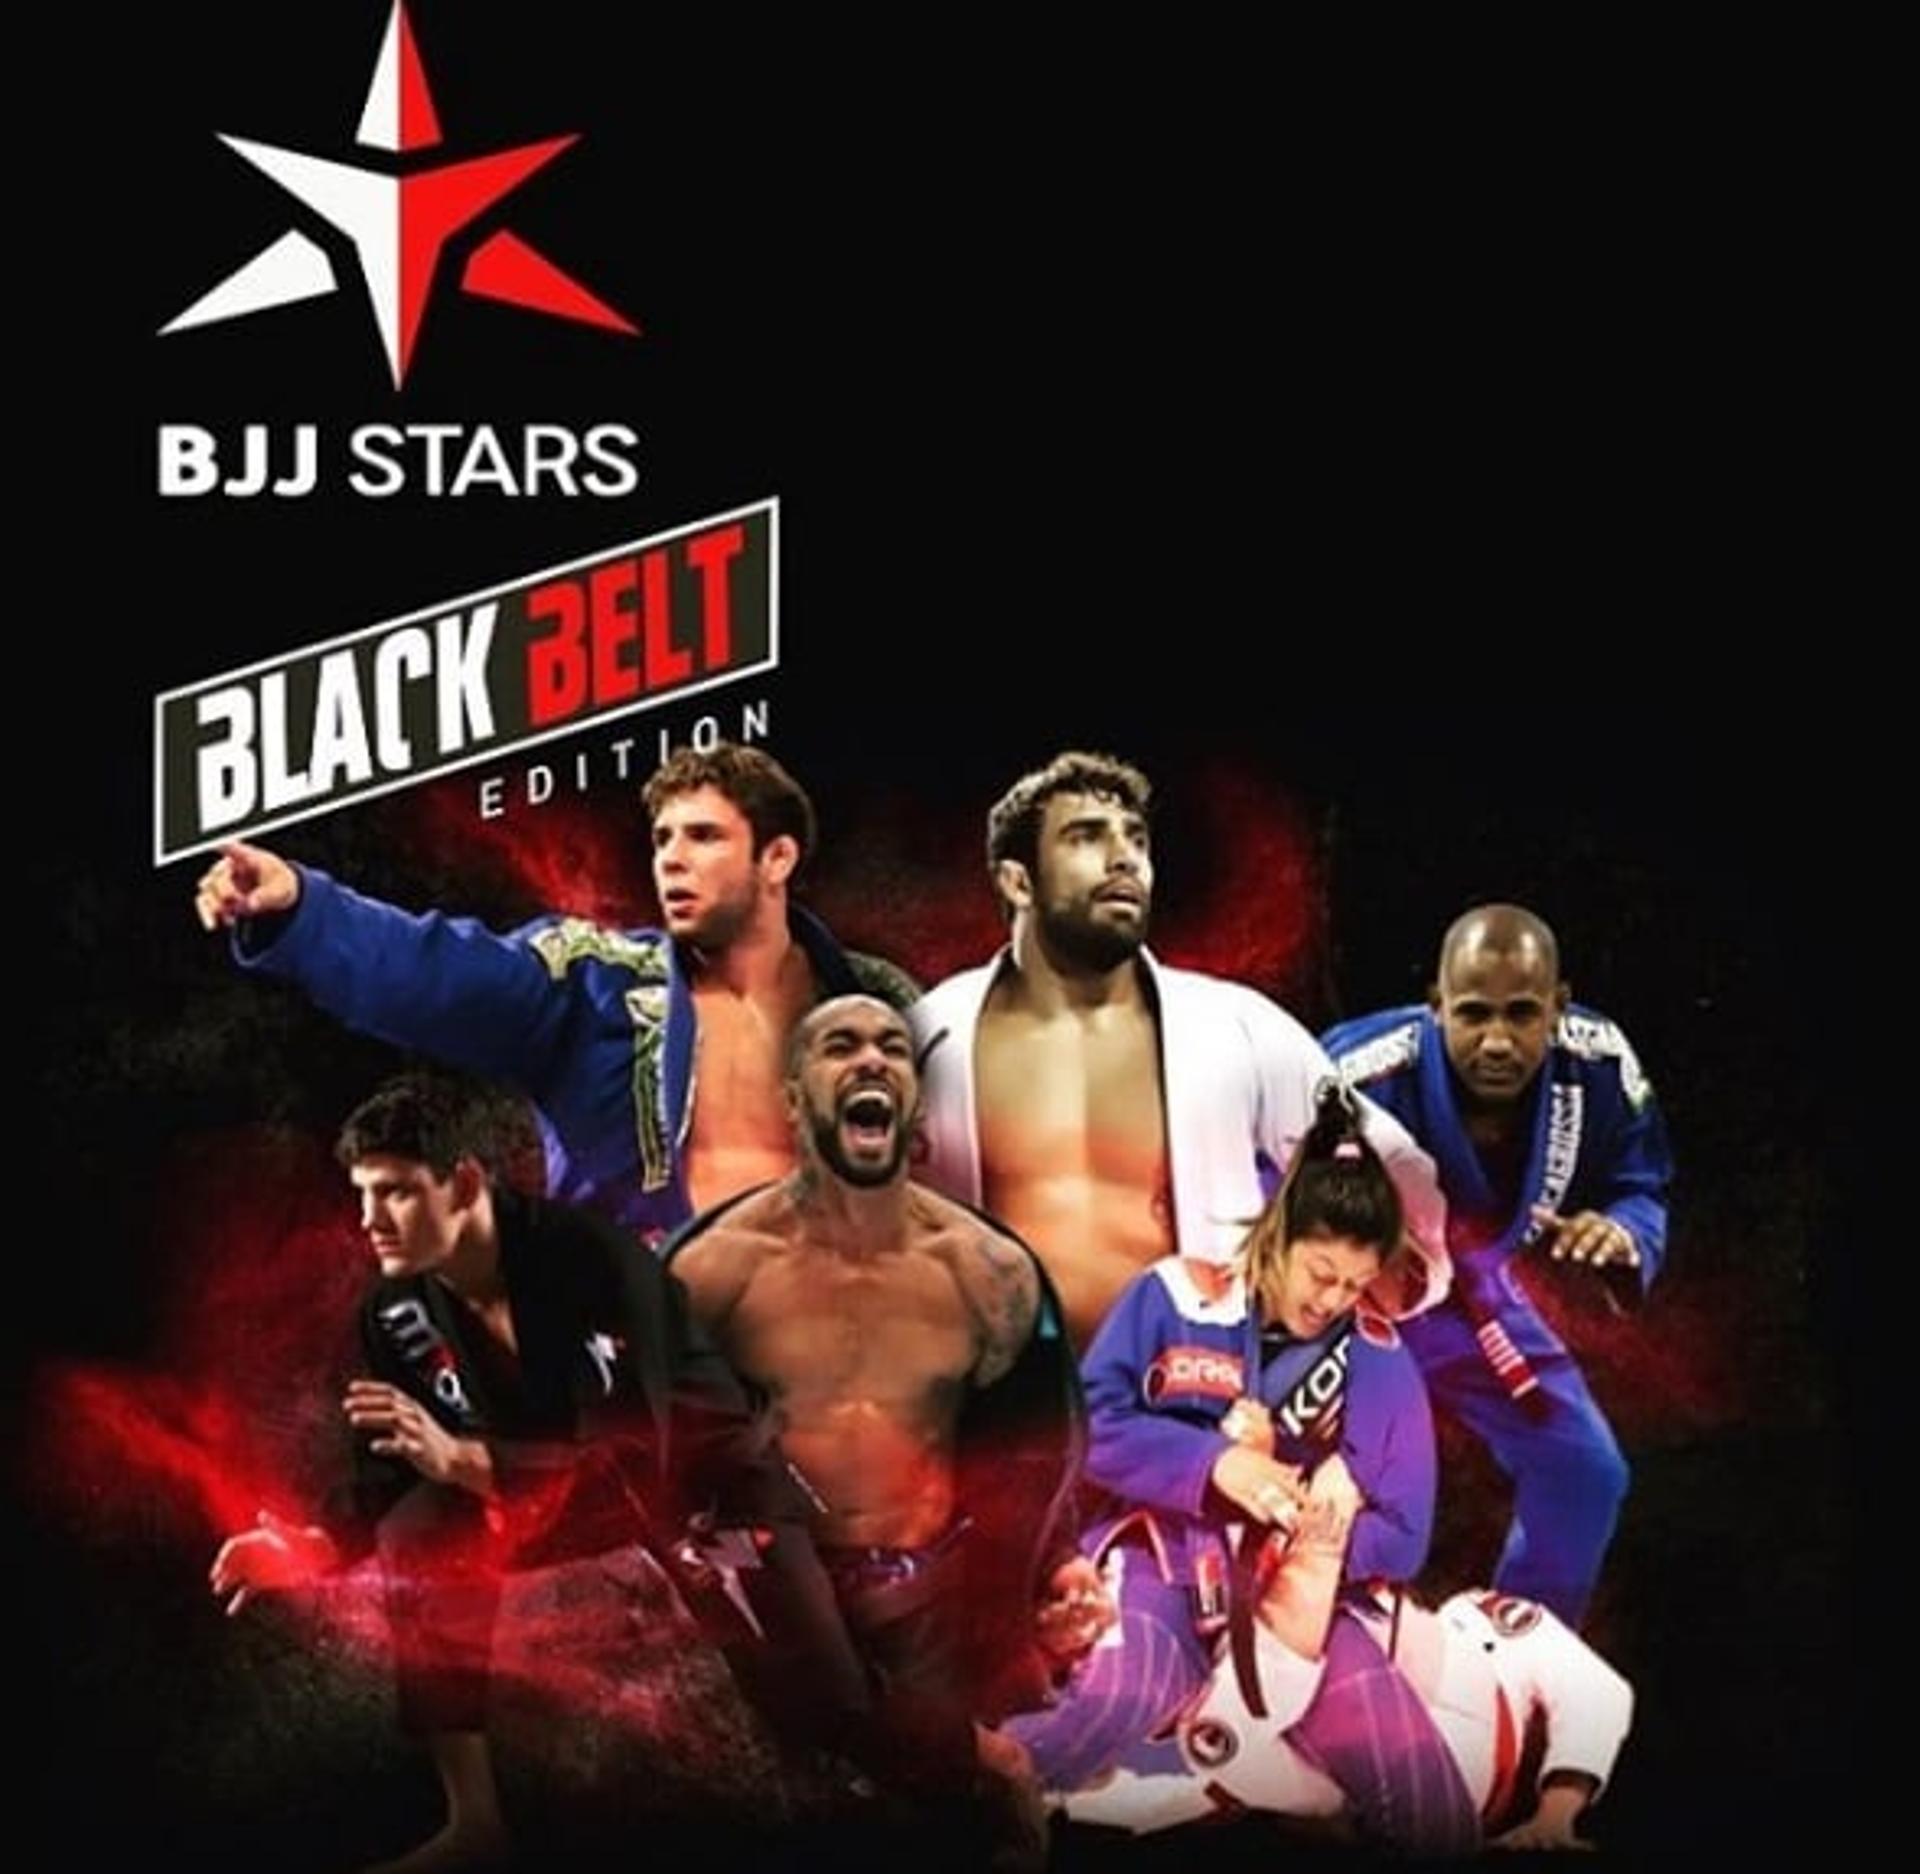 BJJ Stars vai reunir um card estrelar no dia 23 de fevereiro em São Paulo (Foto: Reprodução/Instagram)